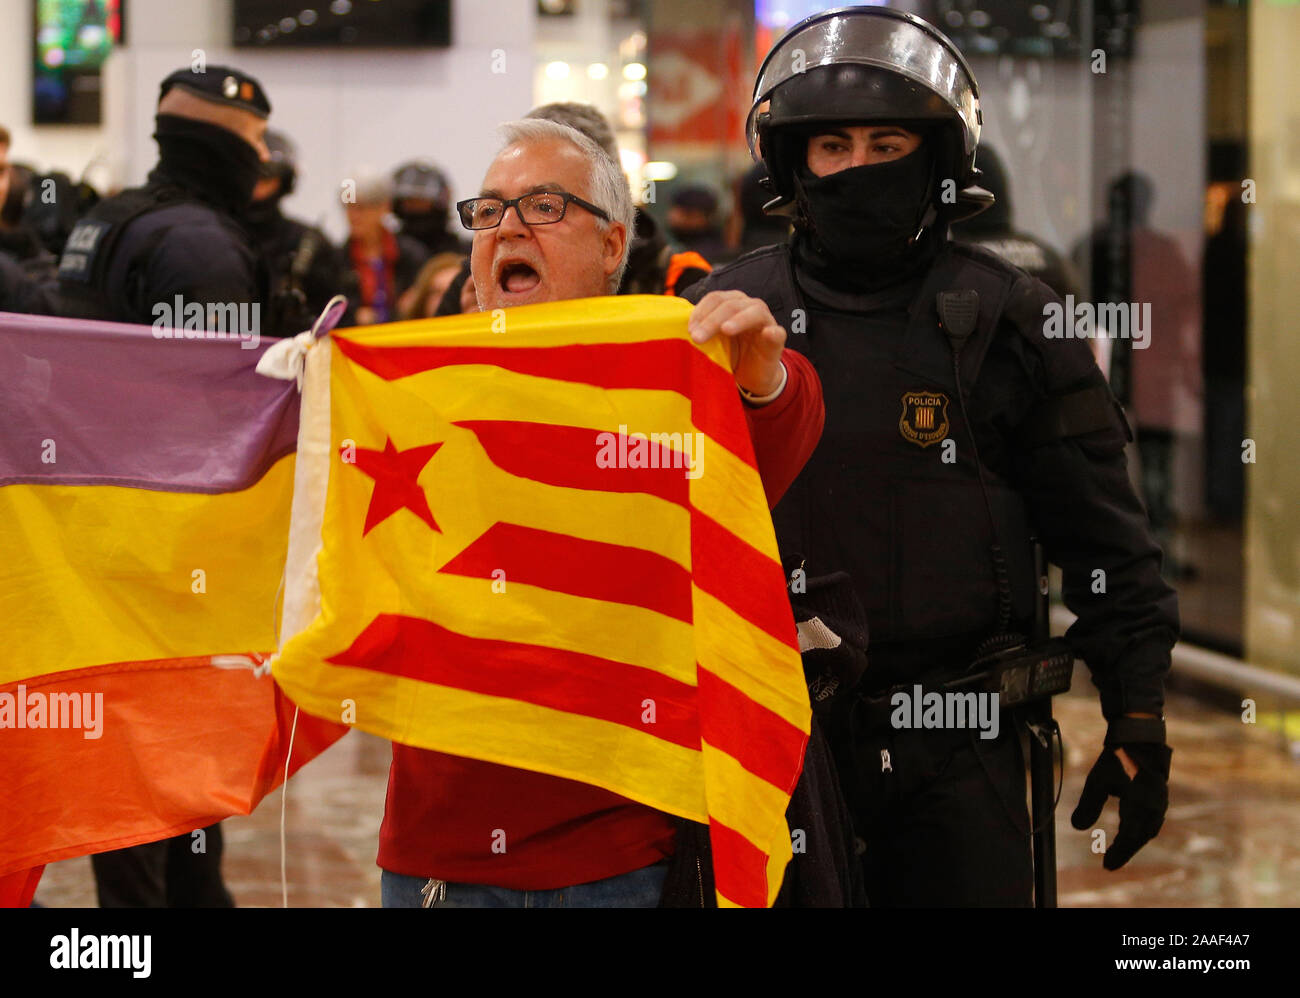 La police catalane Mossos desquadra la gare Sants sécurisé comme une manifestation séparatiste devrait Banque D'Images